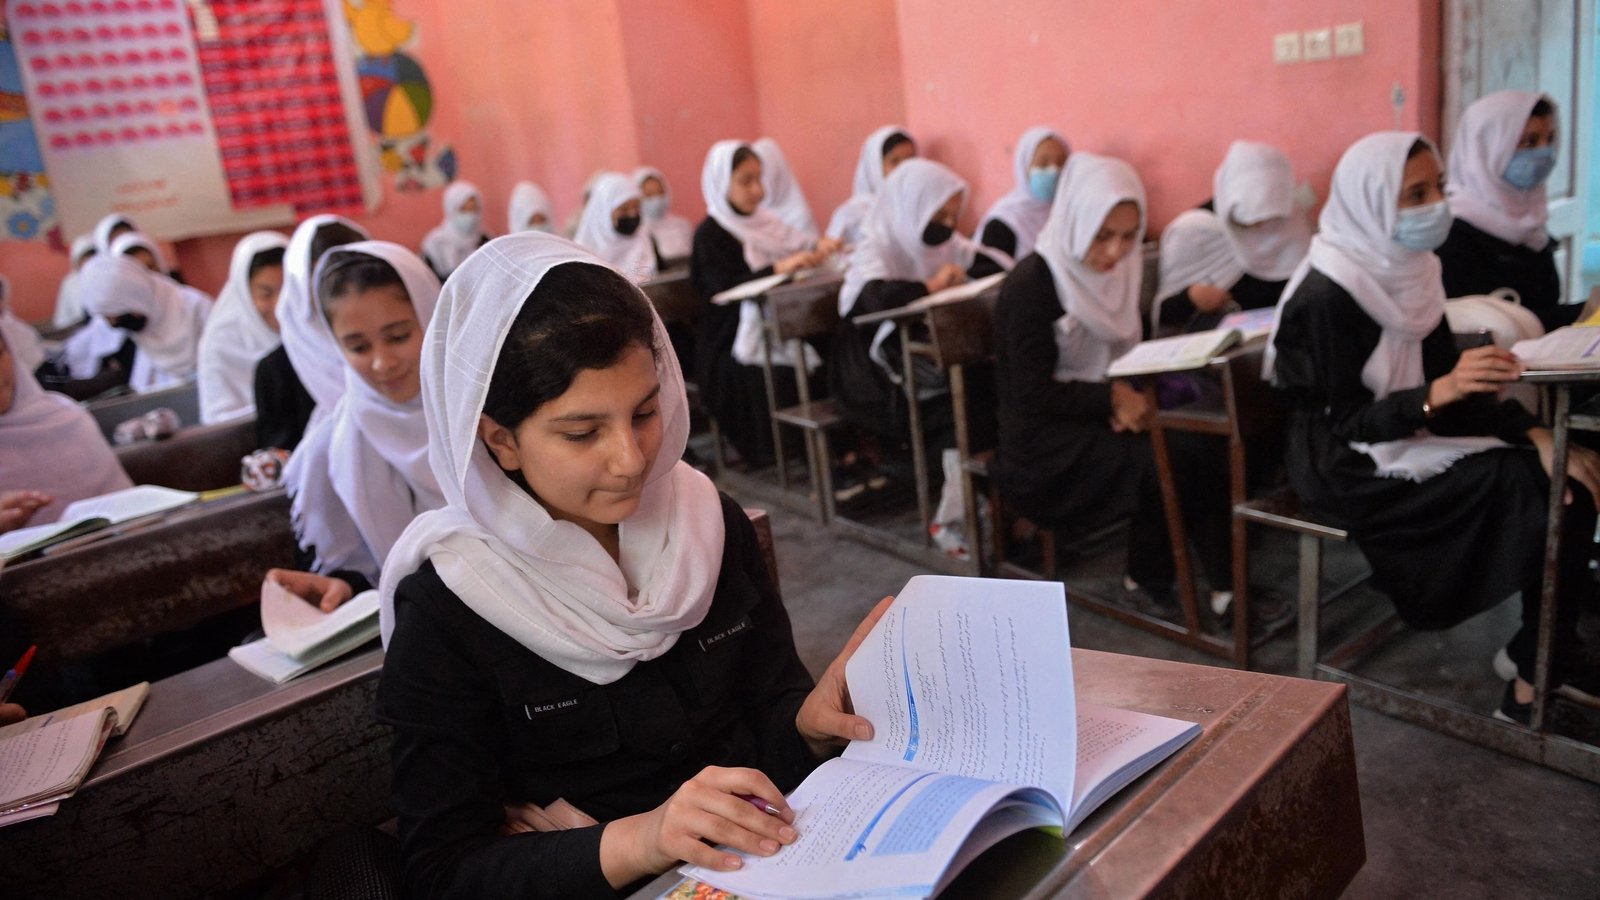 તાલિબાનનો નવો રંગ, હવે છોકરીઓના ભણતર માટે 21 માર્ચ પછી ખોલી શકે છે દેશની તમામ શાળાઓ